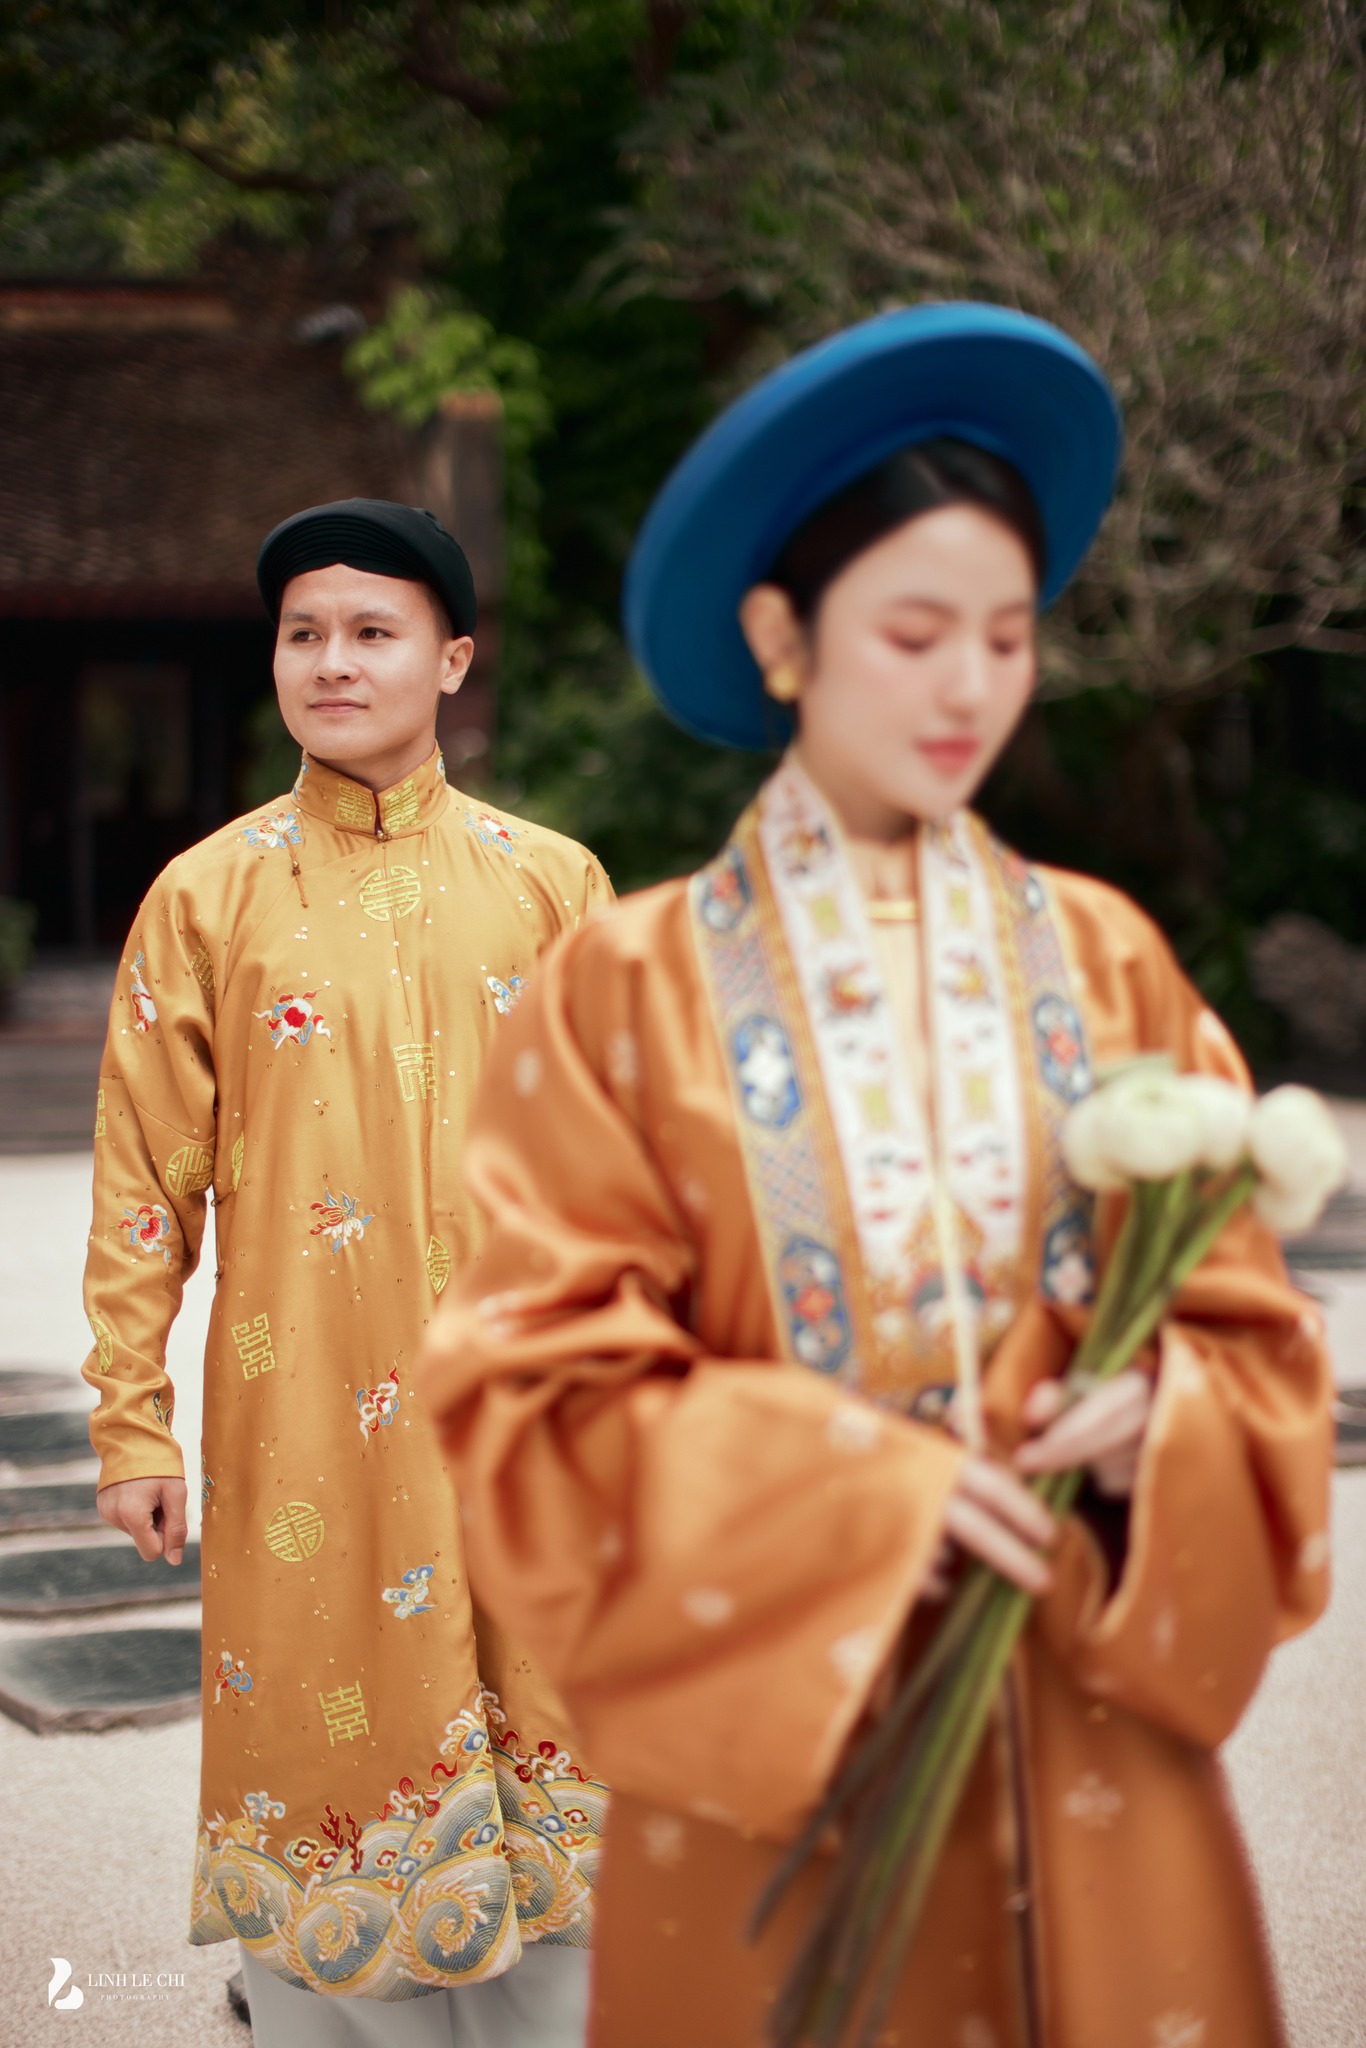 Nơi Quang Hải - Chu Thanh Huyền chụp ảnh cưới: nằm ẩn dật trên đồi thông, cách Hà Nội hơn 1 giờ lái xe- Ảnh 10.